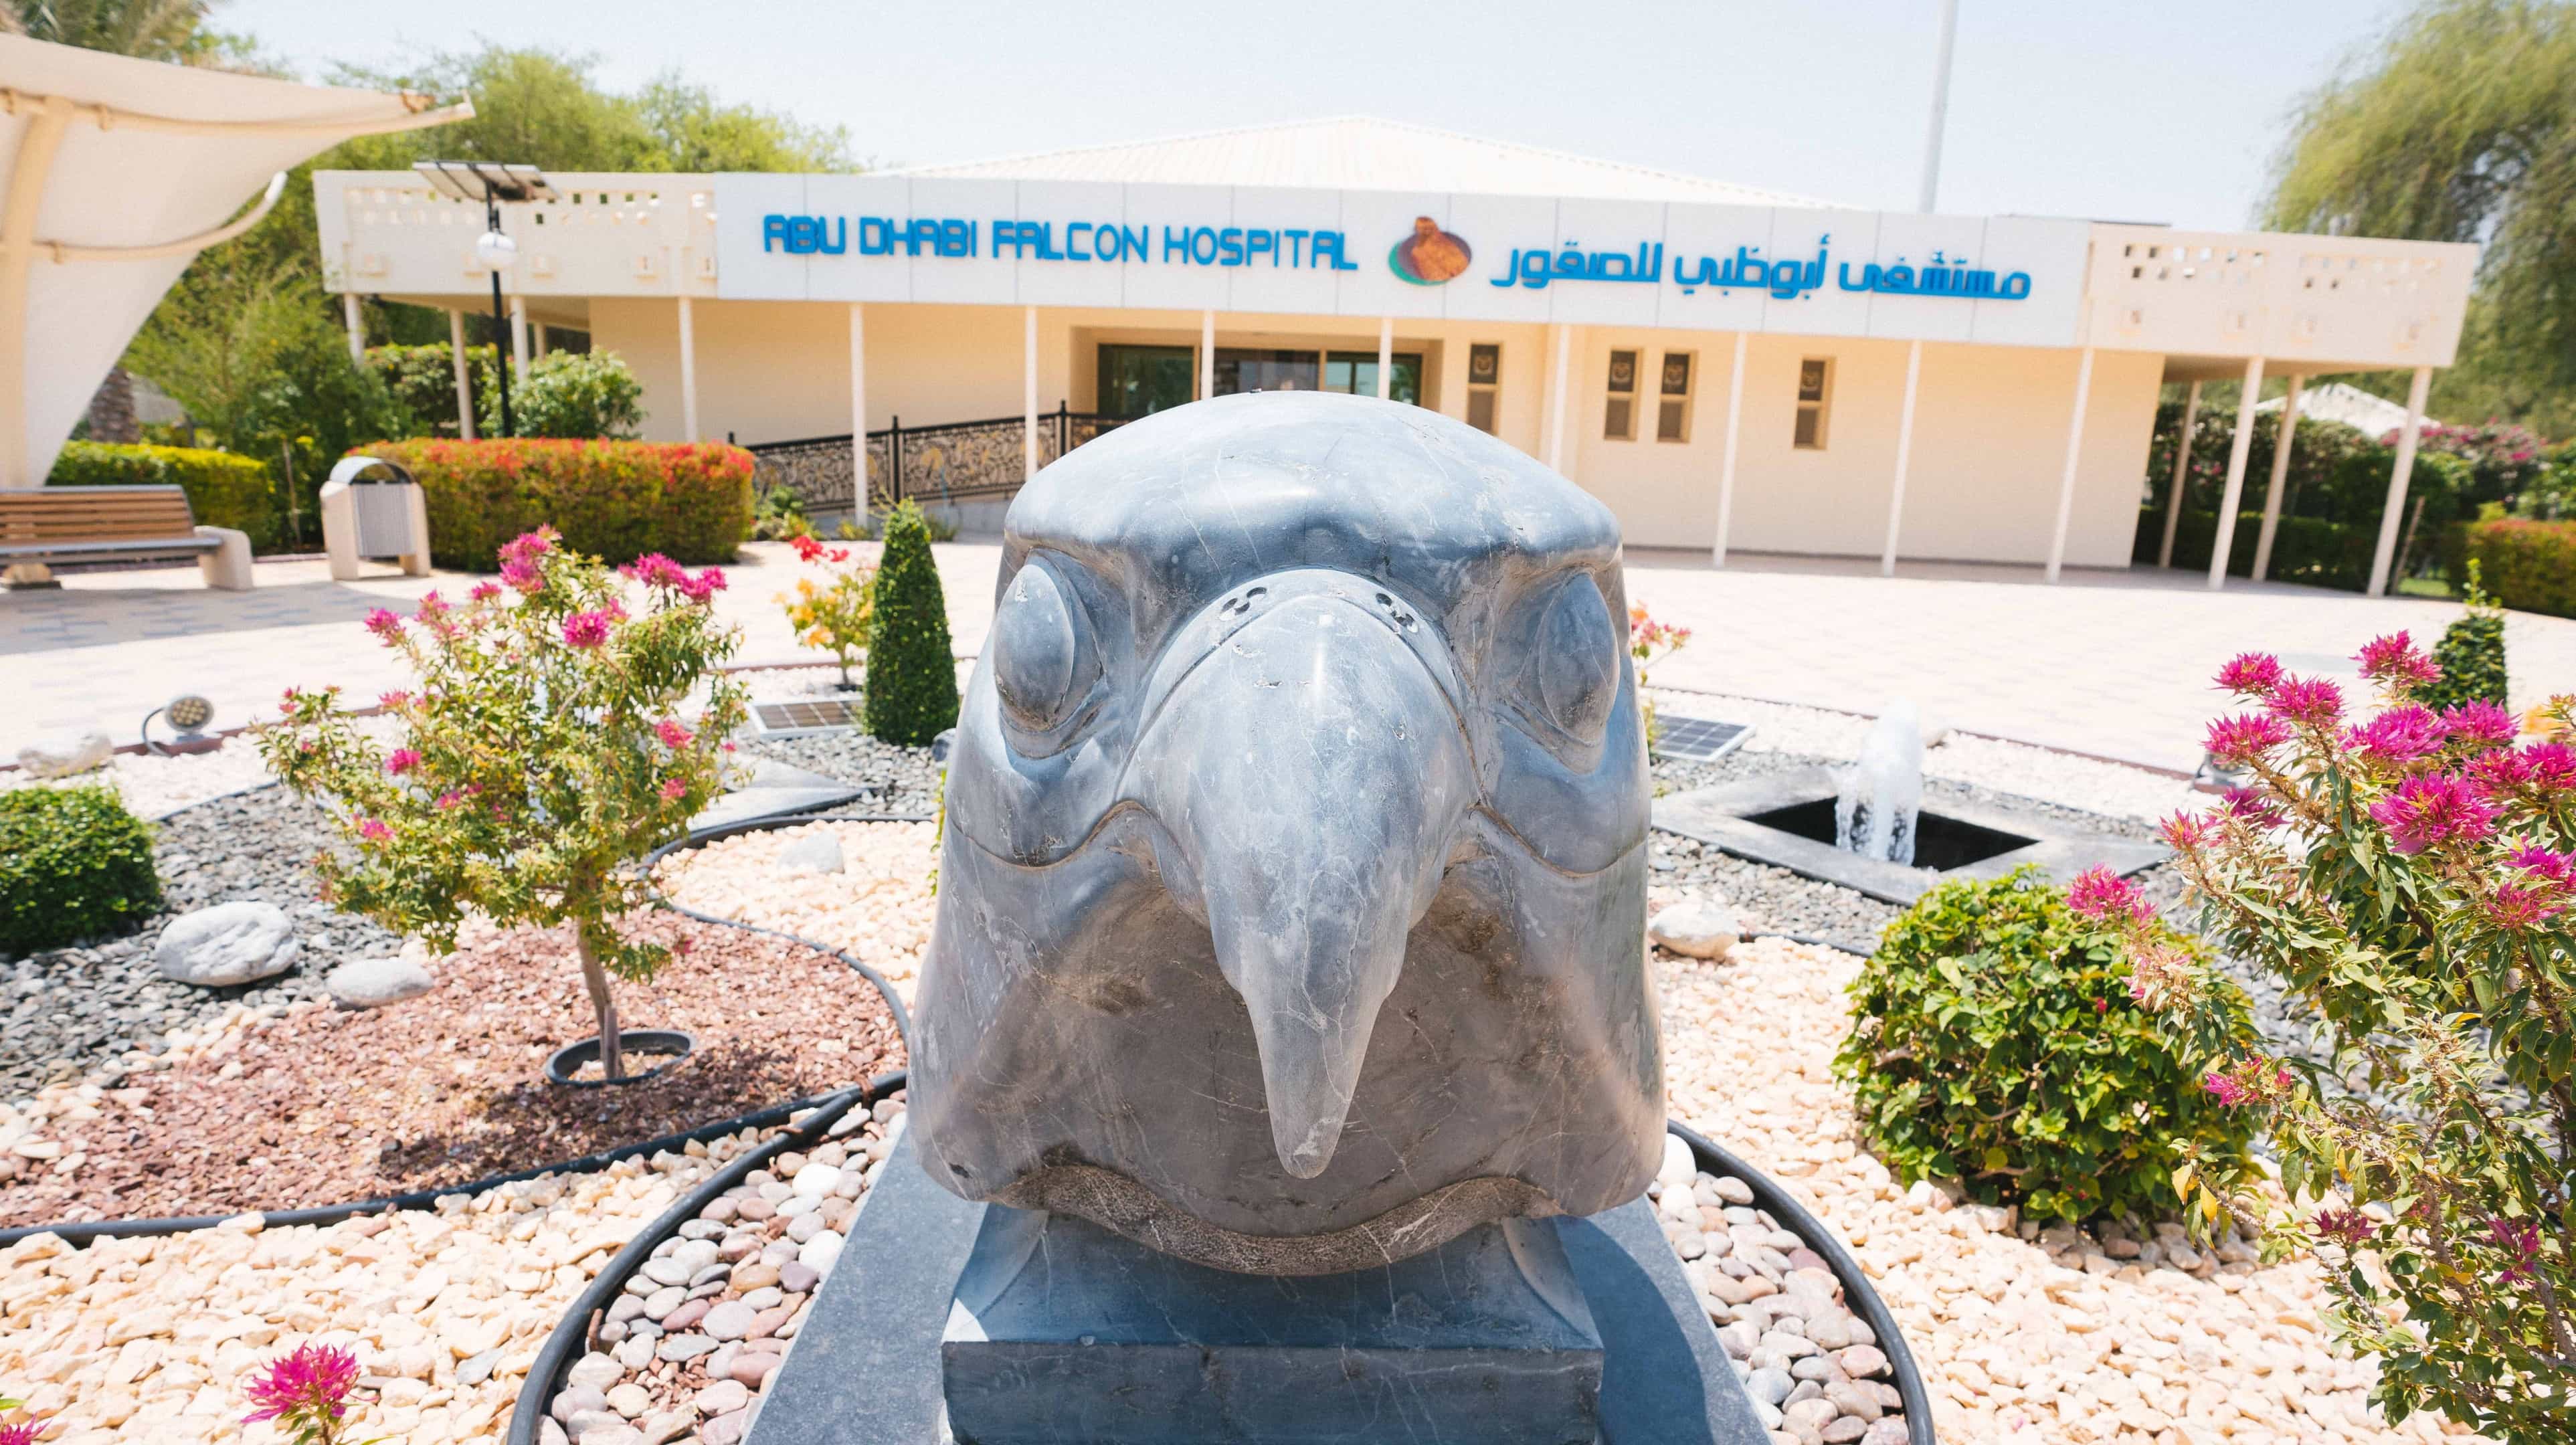 בית החולים לבזים Abu Dhabi Falcon Hospital